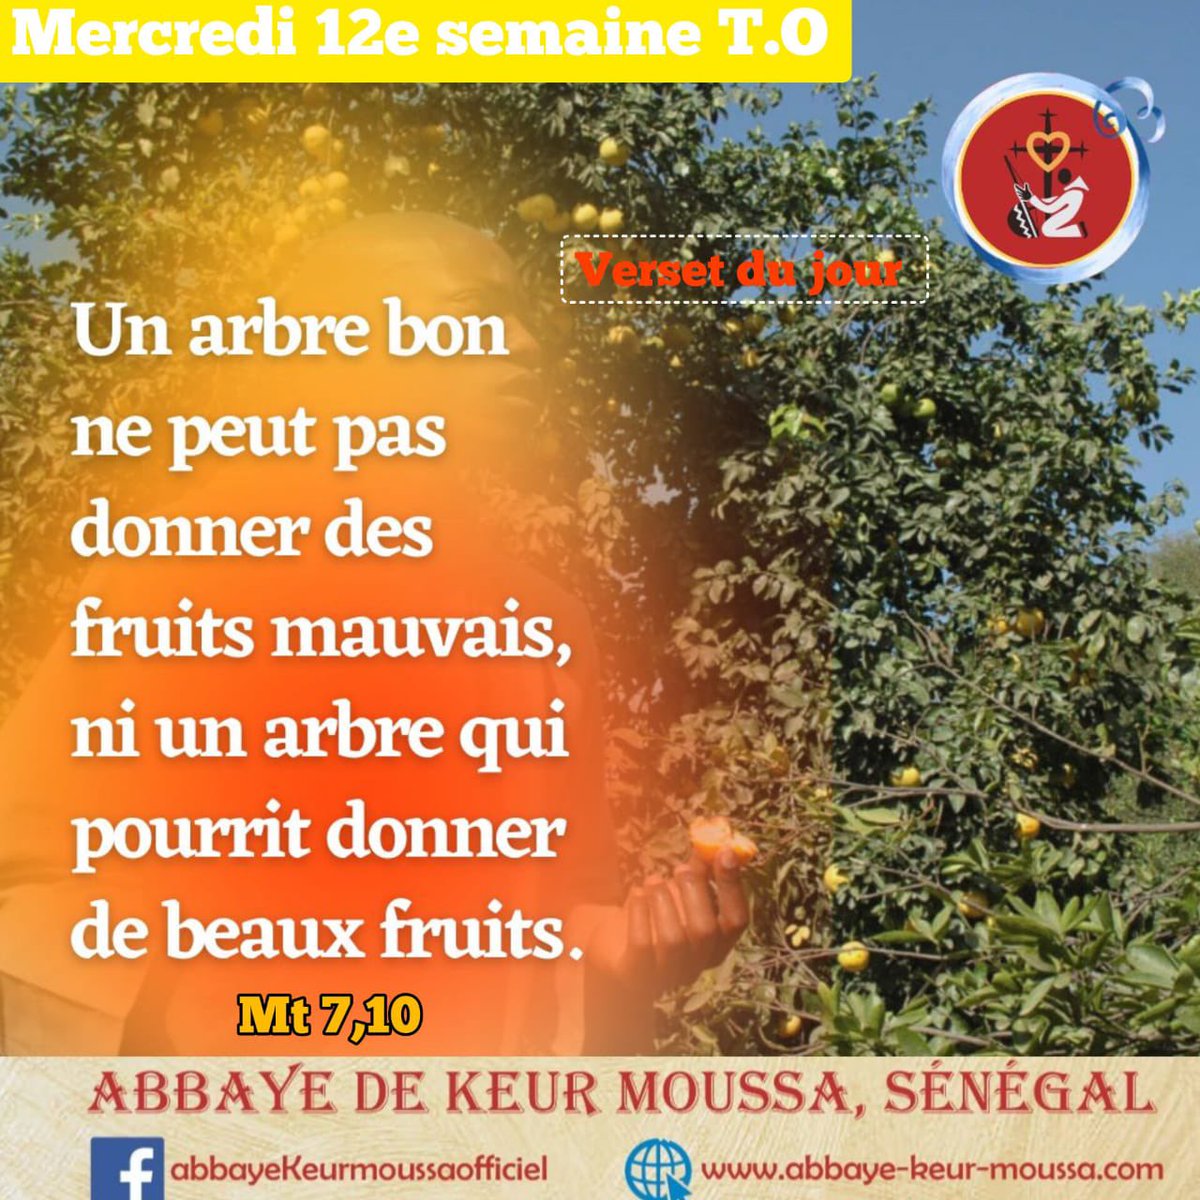 @abbayedekeurmoussa #abbayedekeurmoussa #keurmoussa #versetdujour « Un #arbre #bon ne peut pas donner des #fruits #mauvais, ni un arbre qui pourrit #donner de #beaux fruits », Mt 7,18